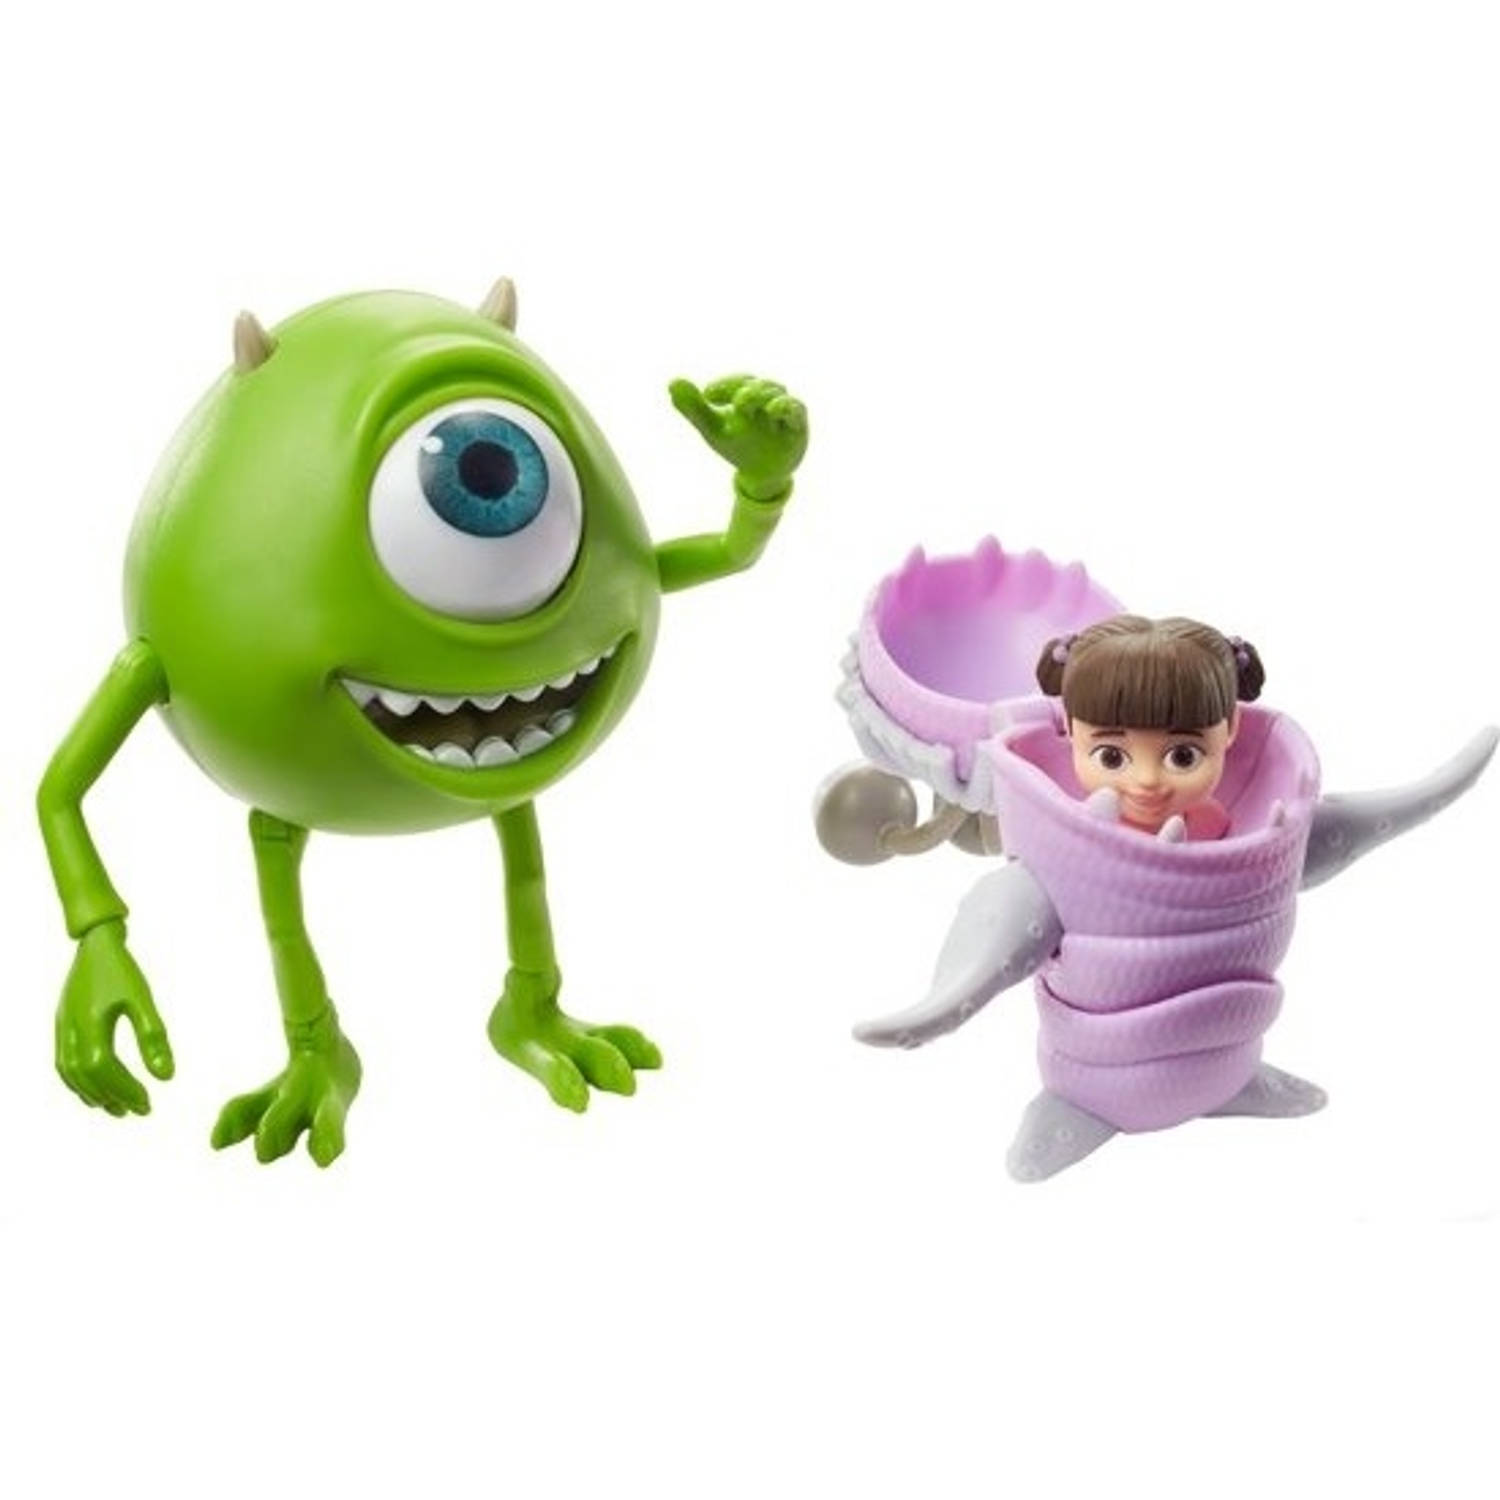 Mattel Speelfiguren Pixar Mike & Boo Groen/roze 10 Cm